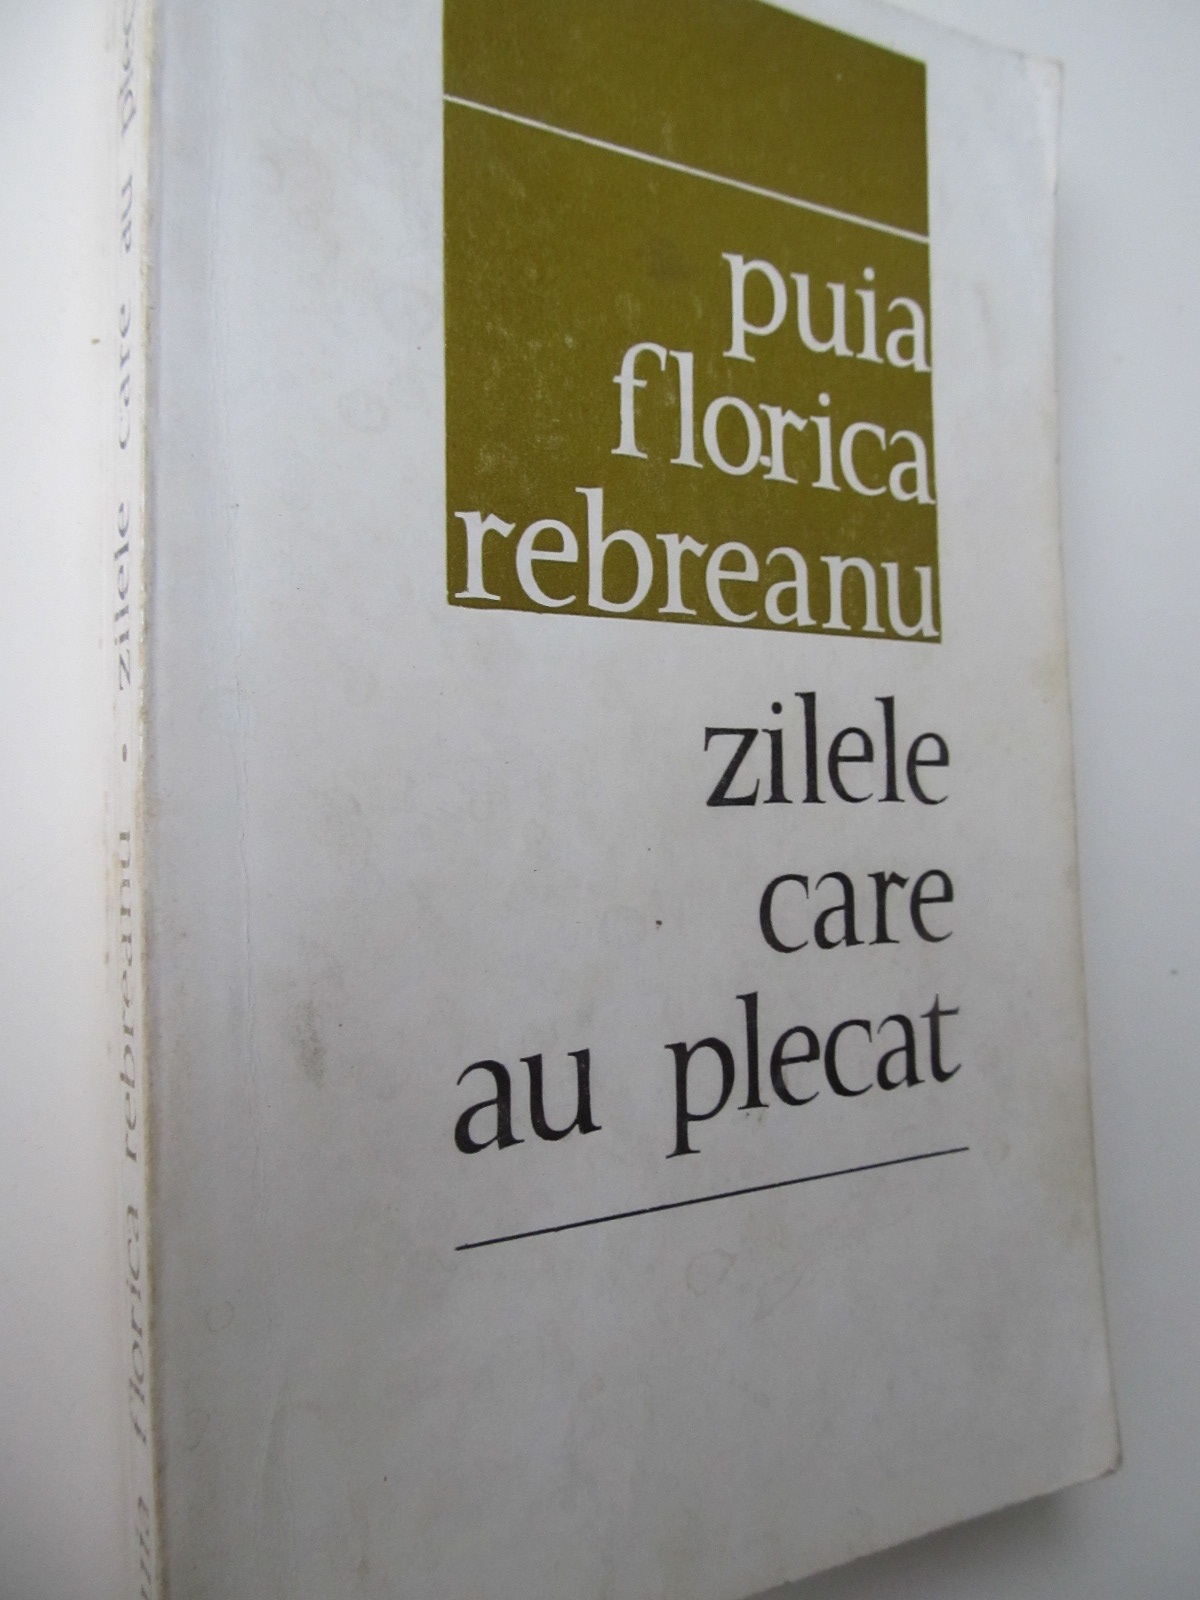 Zilele care au plecat - Puia Florica Rebreanu | Detalii carte